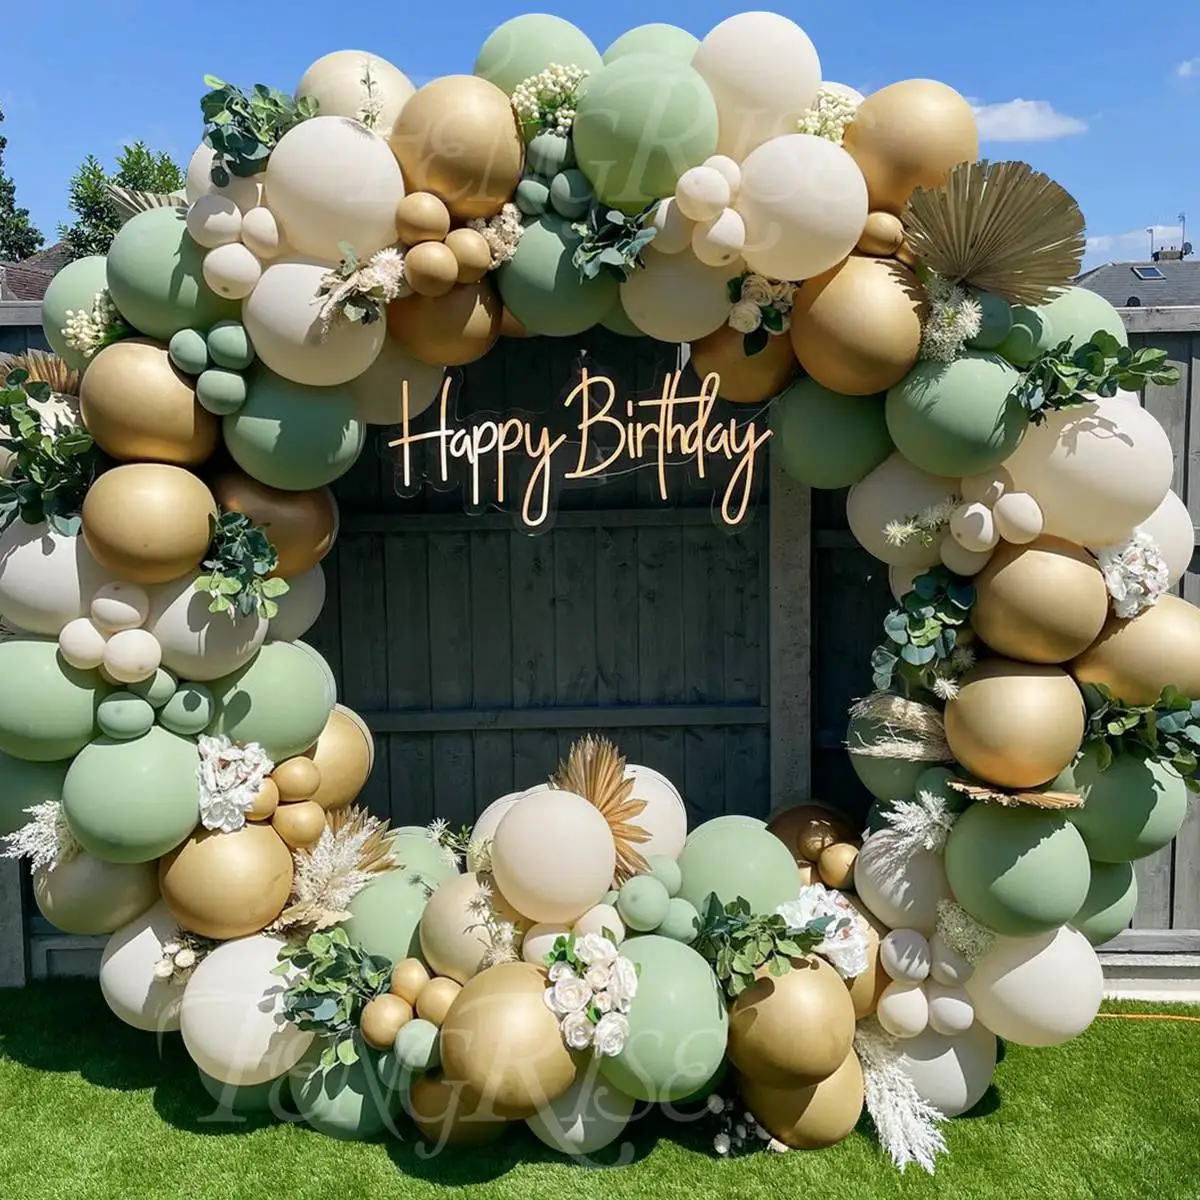 

Гирлянда с зелеными воздушными шарами в виде авокадо, украшение для свадьбы, дня рождения, Детские шары для праздника, шары с конфетти из лат...